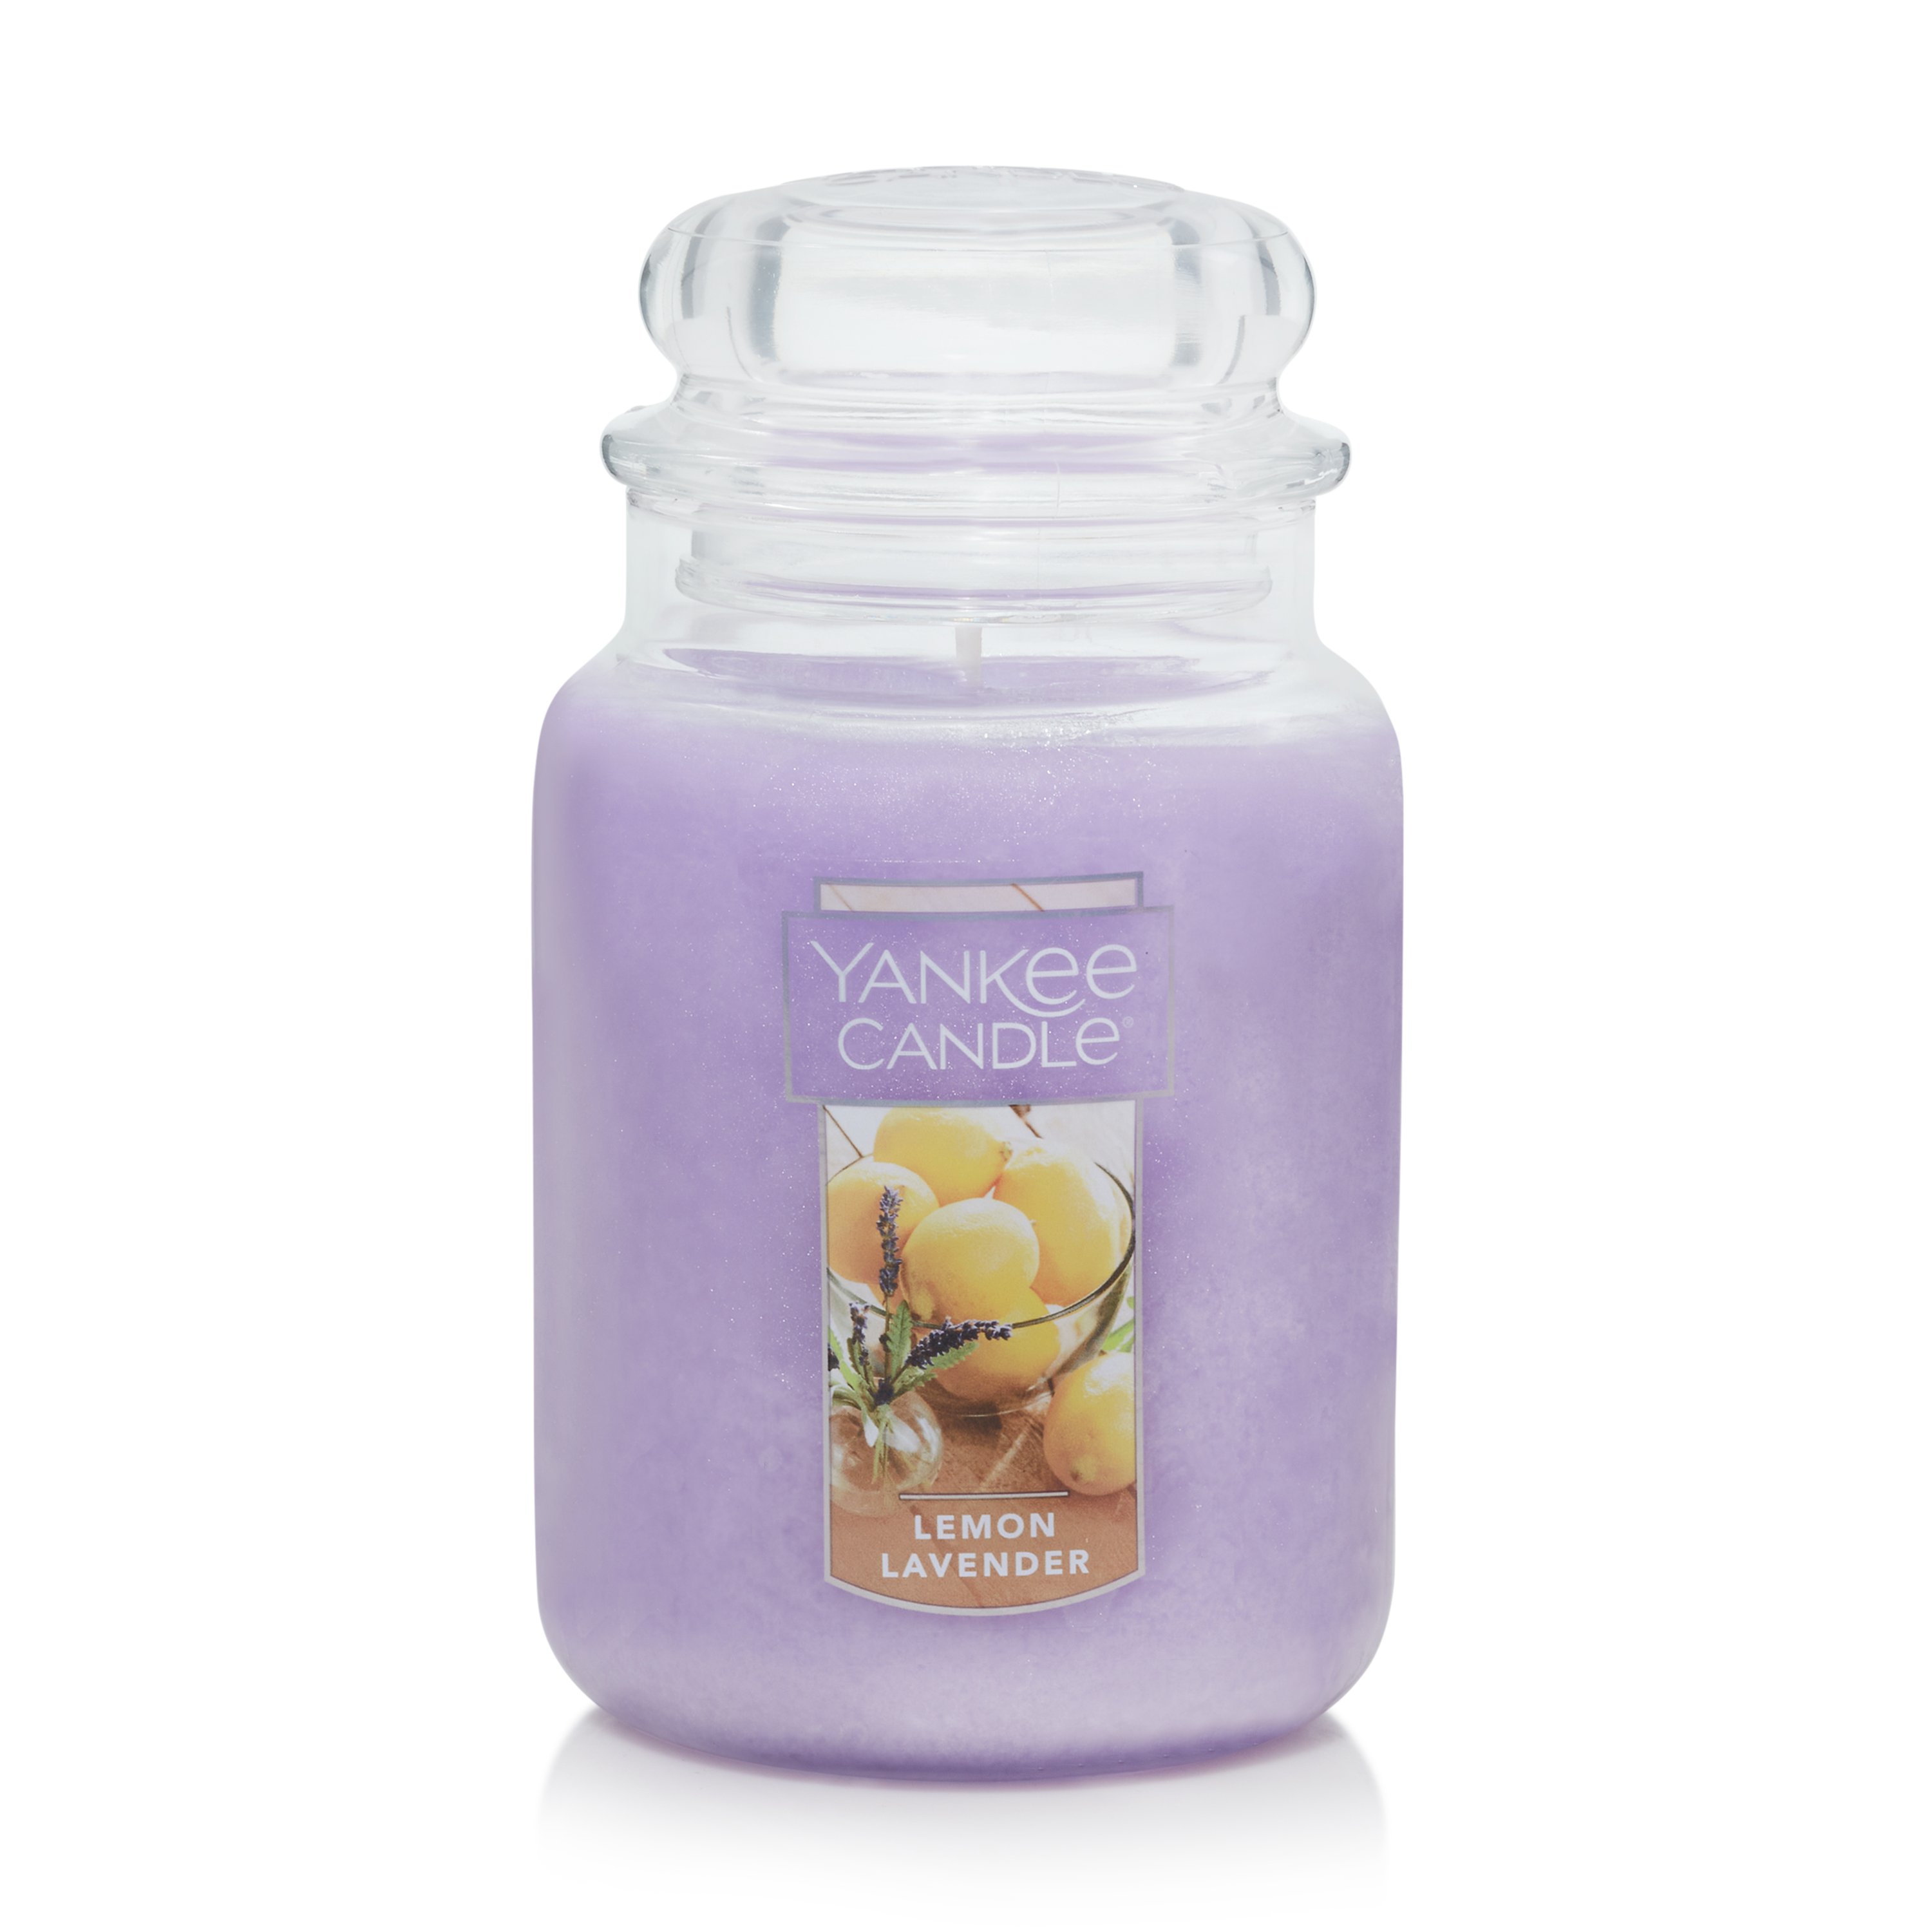 Yankee Candle - Lemon Lavender Large 22 oz Jar Candle